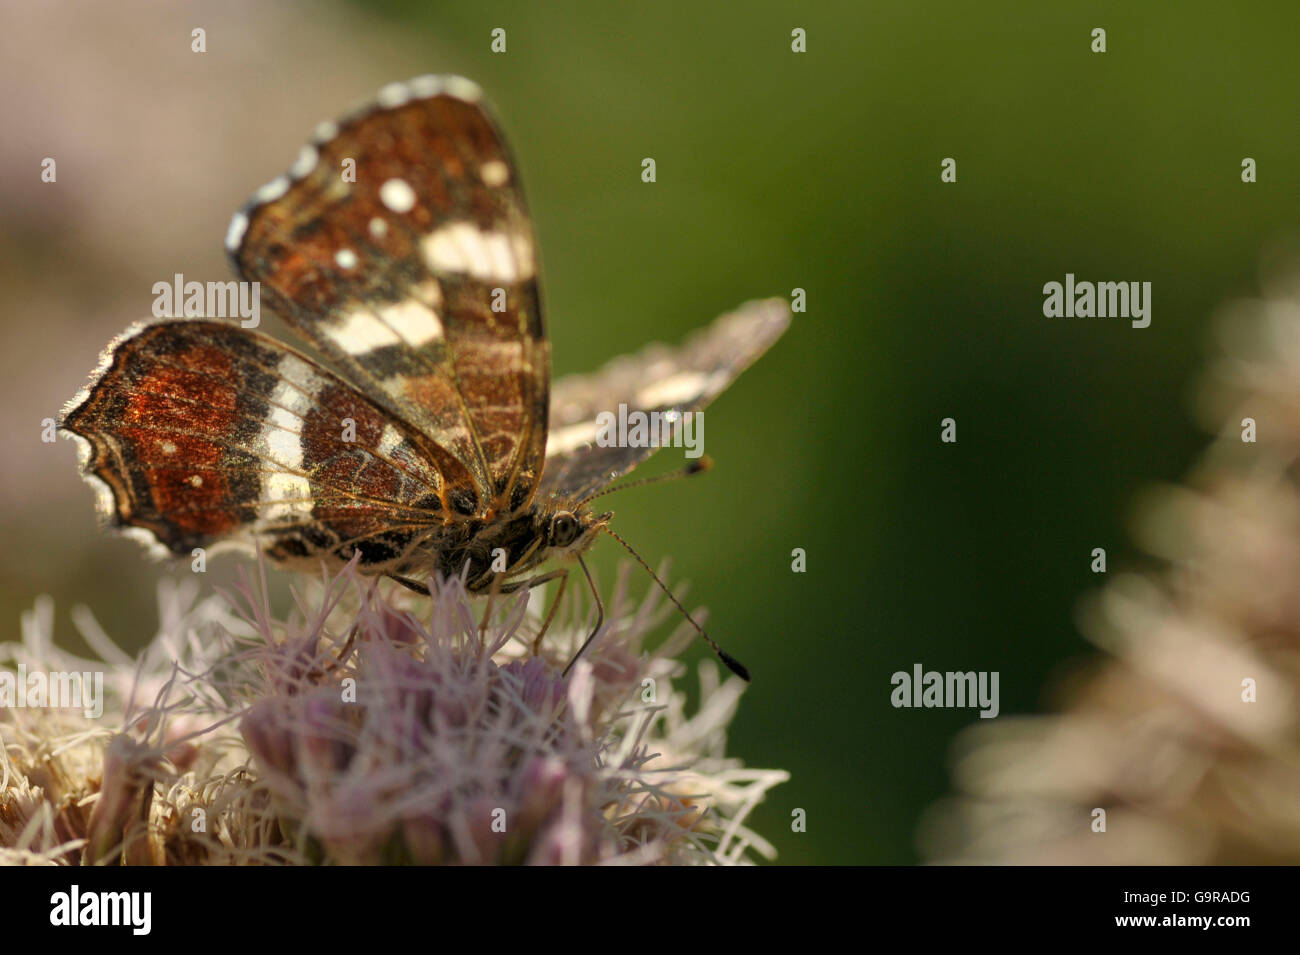 Schmetterling auf Hanf Agrimony, Sommer Generation, Nettetal, Nordrhein-Westfalen, Deutschland Karte / (Araschnia Levana F. Prorsa) (Eupatorium Cannabinum) / Europäische Karte Stockfoto